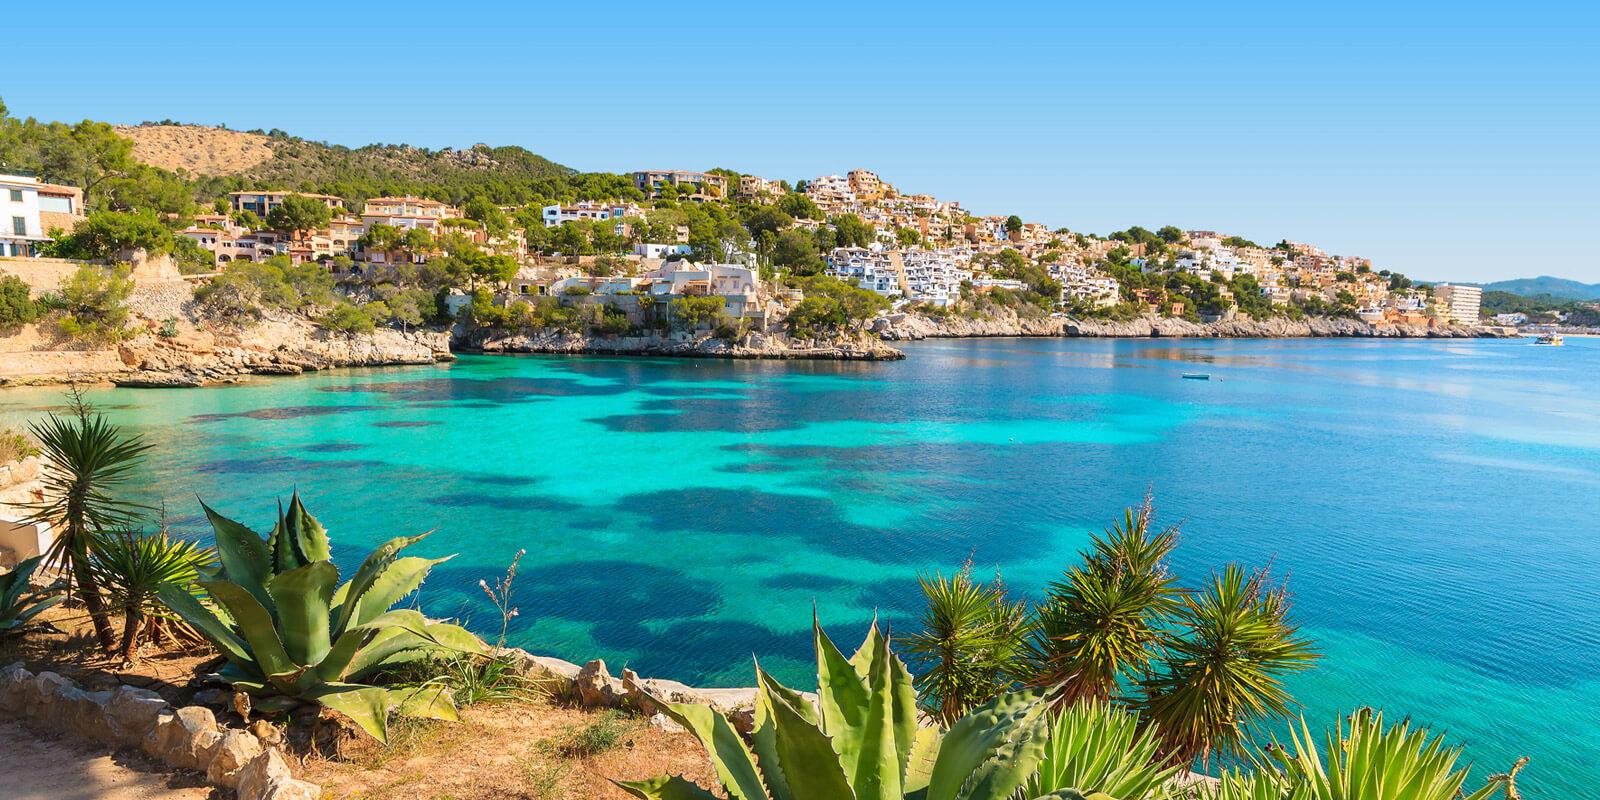 Vakantie Mallorca